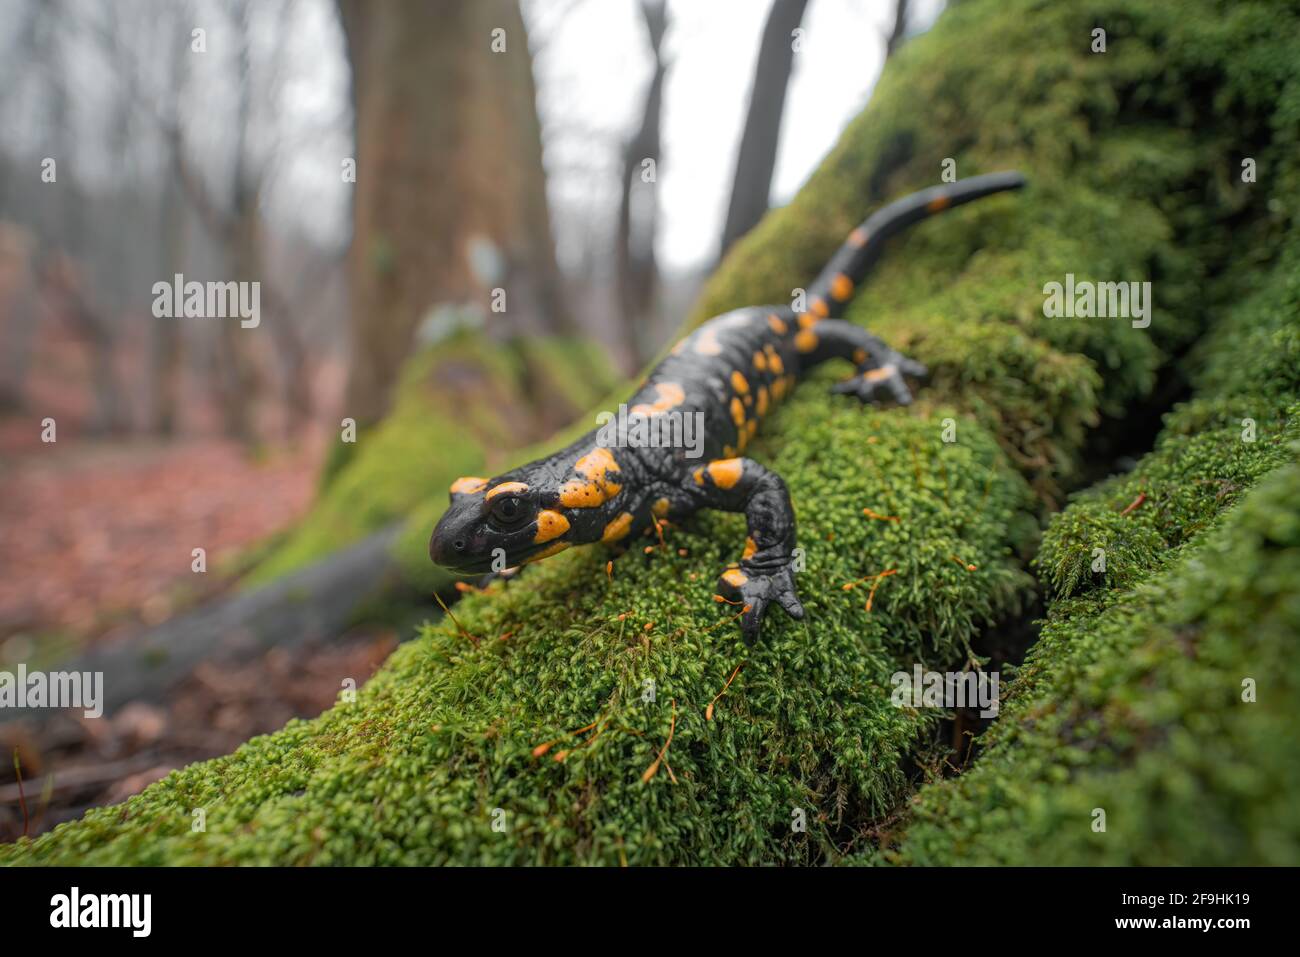 Nahaufnahme des Feuersalamanders (Salamandra salamandra), der auf grünem, nassem Moos sitzt. Wald im Hintergrund. Geringe Schärfentiefe Stockfoto